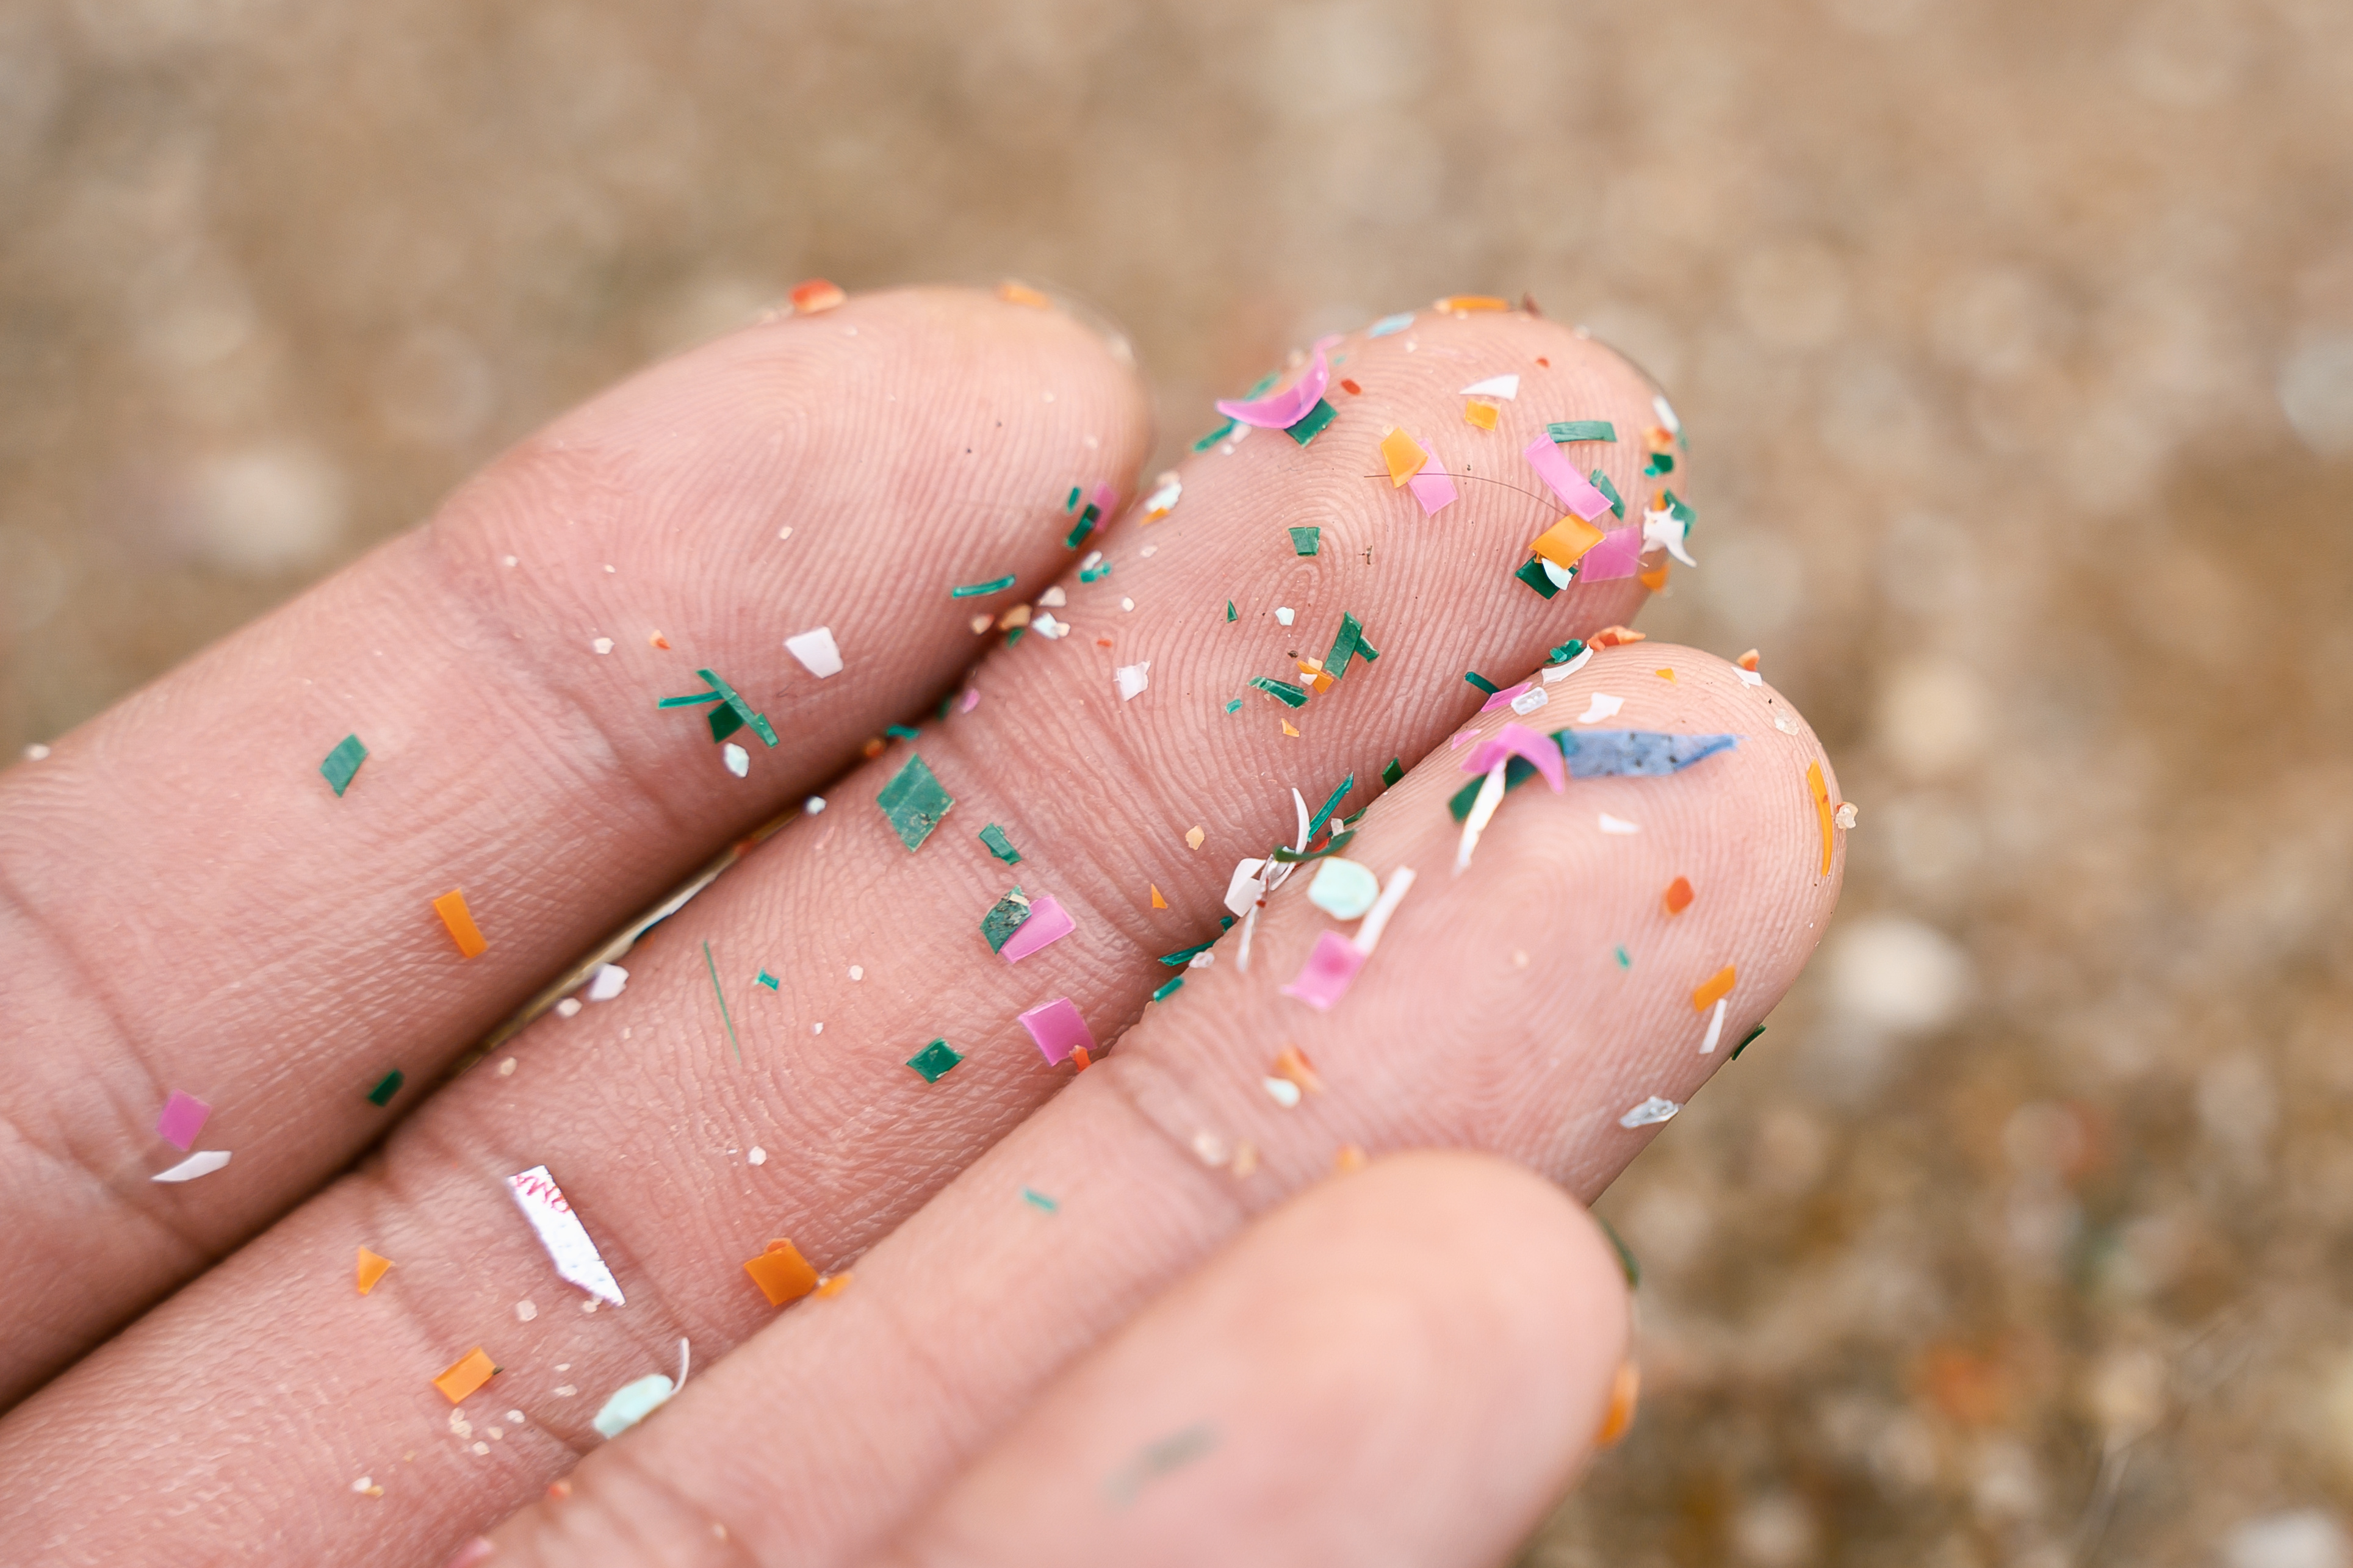 Mikroplastik Körper: Nahaufnahme von Hand, in der Mikroplastik liegt